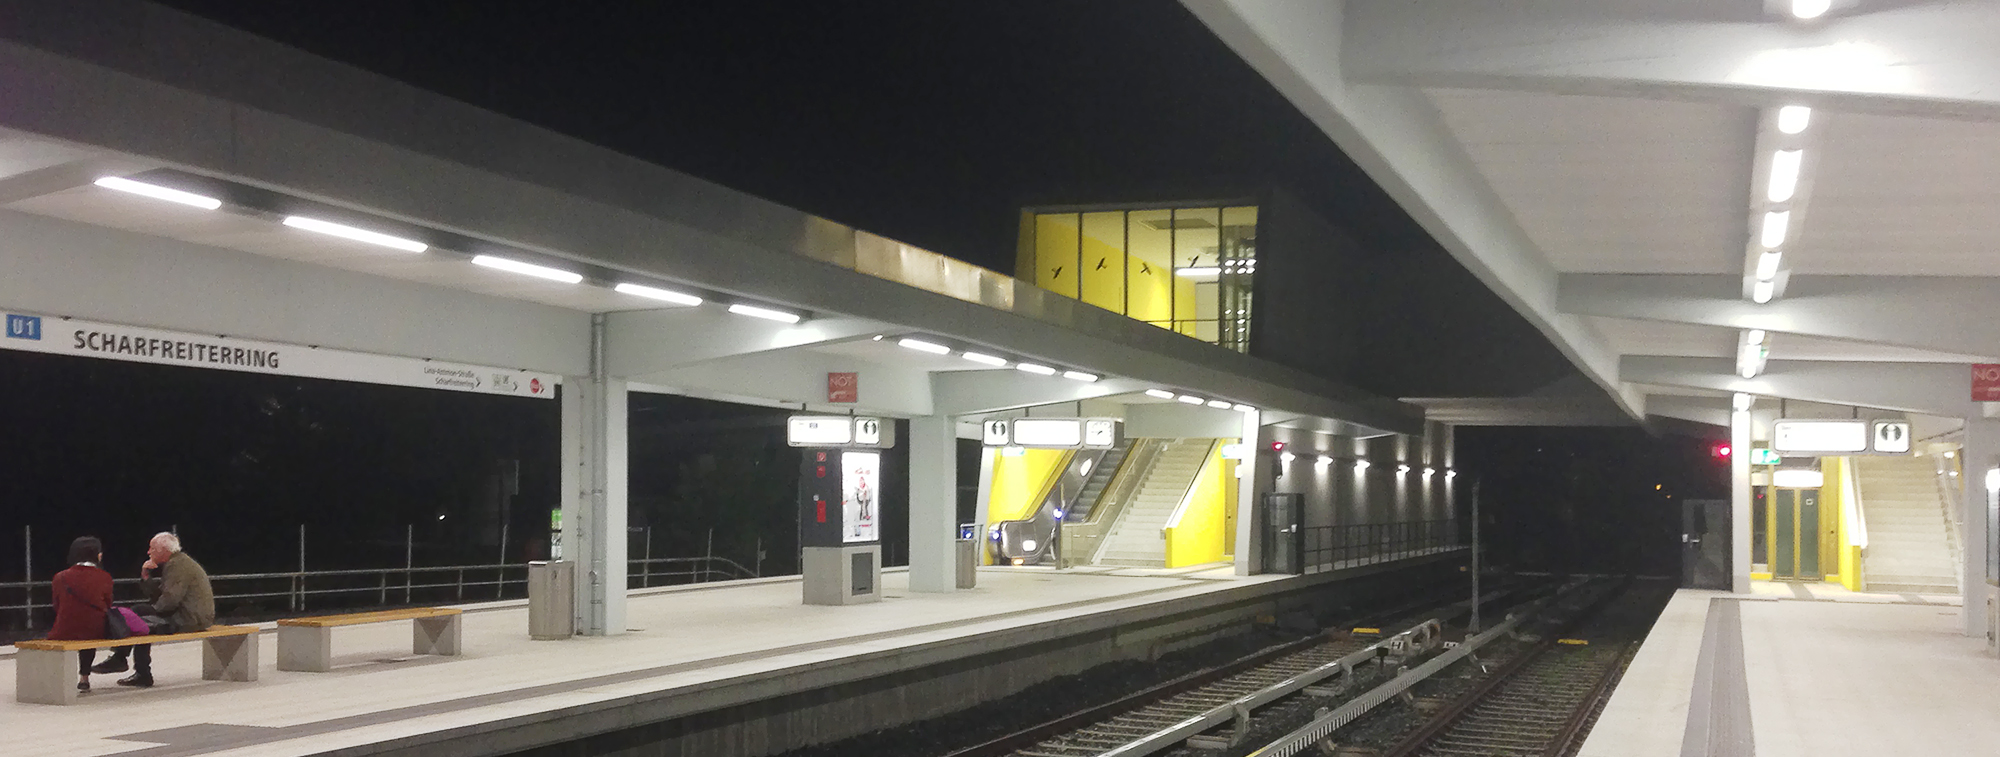 Hell und freundlich präsentiert sich der sanierte U-Bahnhof Scharfreiterring auch bei Nacht